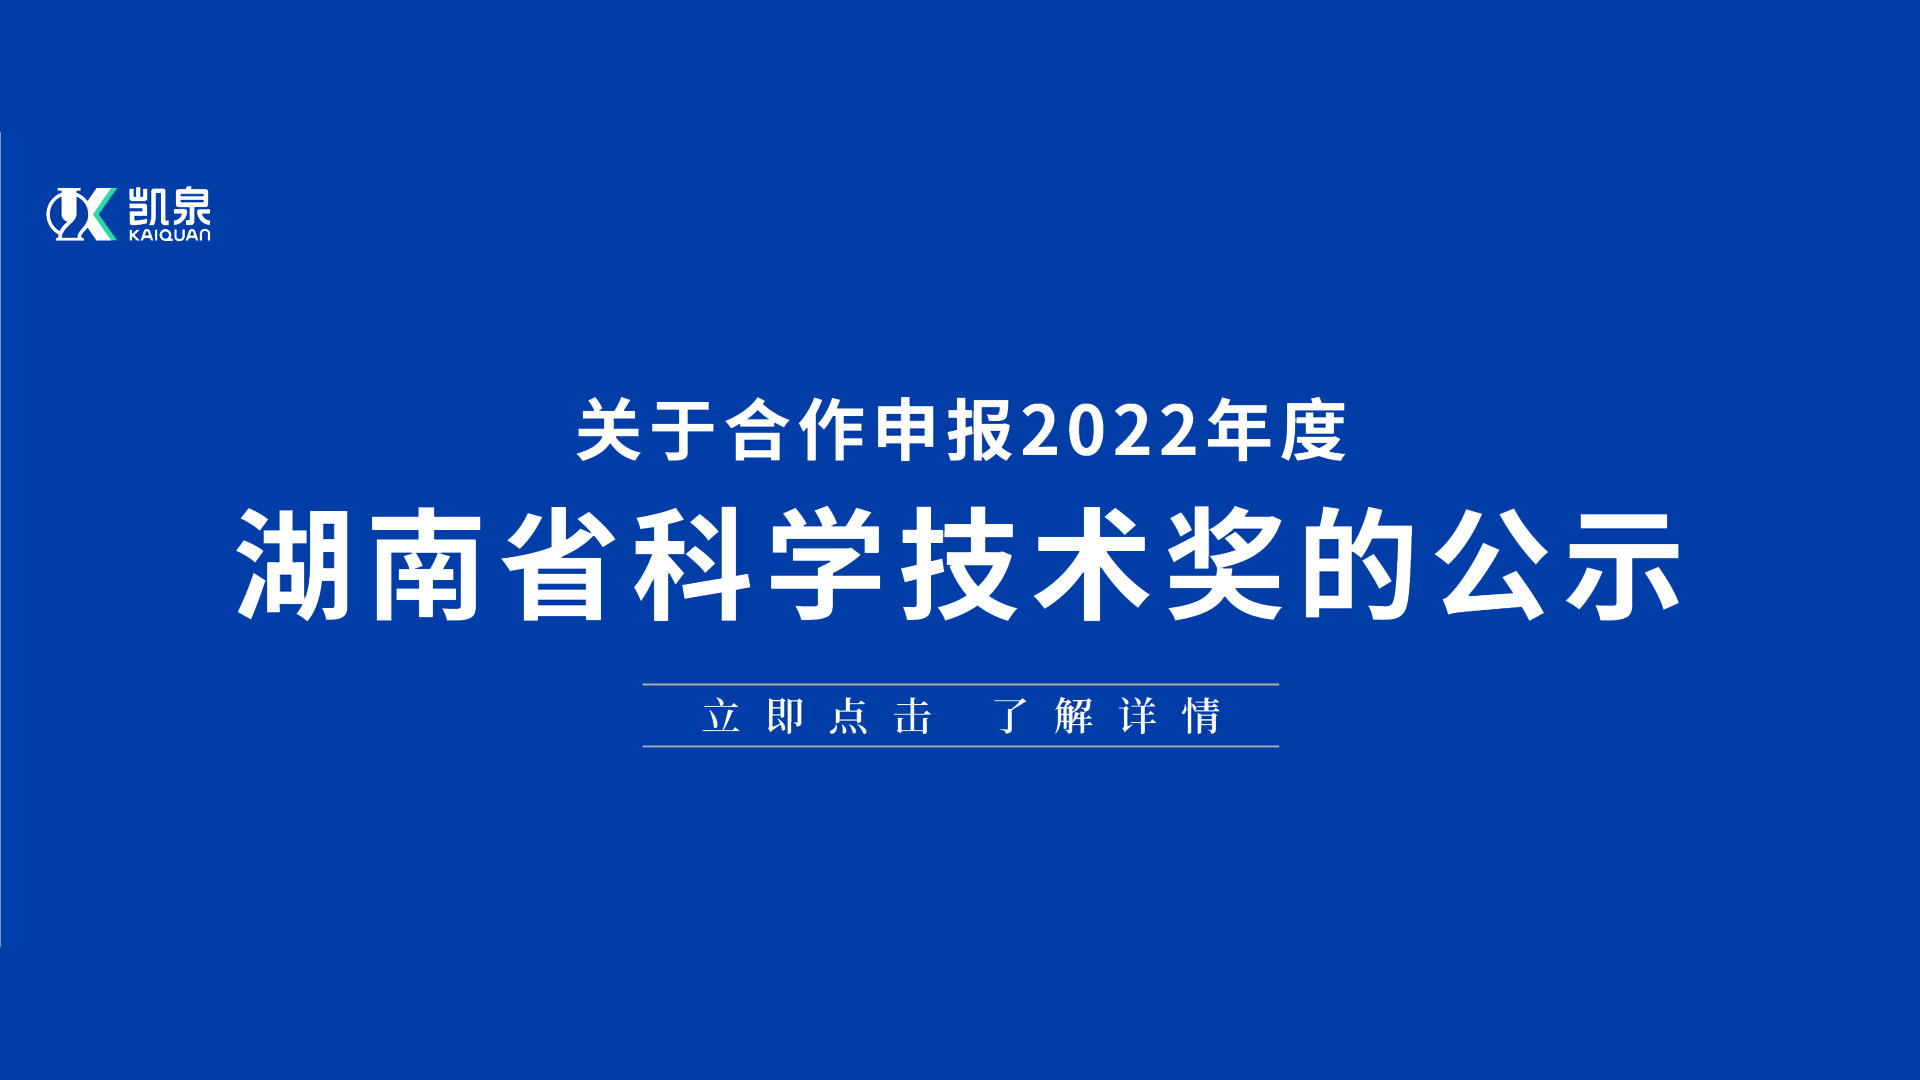 關于合作申報 2022 年度湖南省科學技術獎的公示